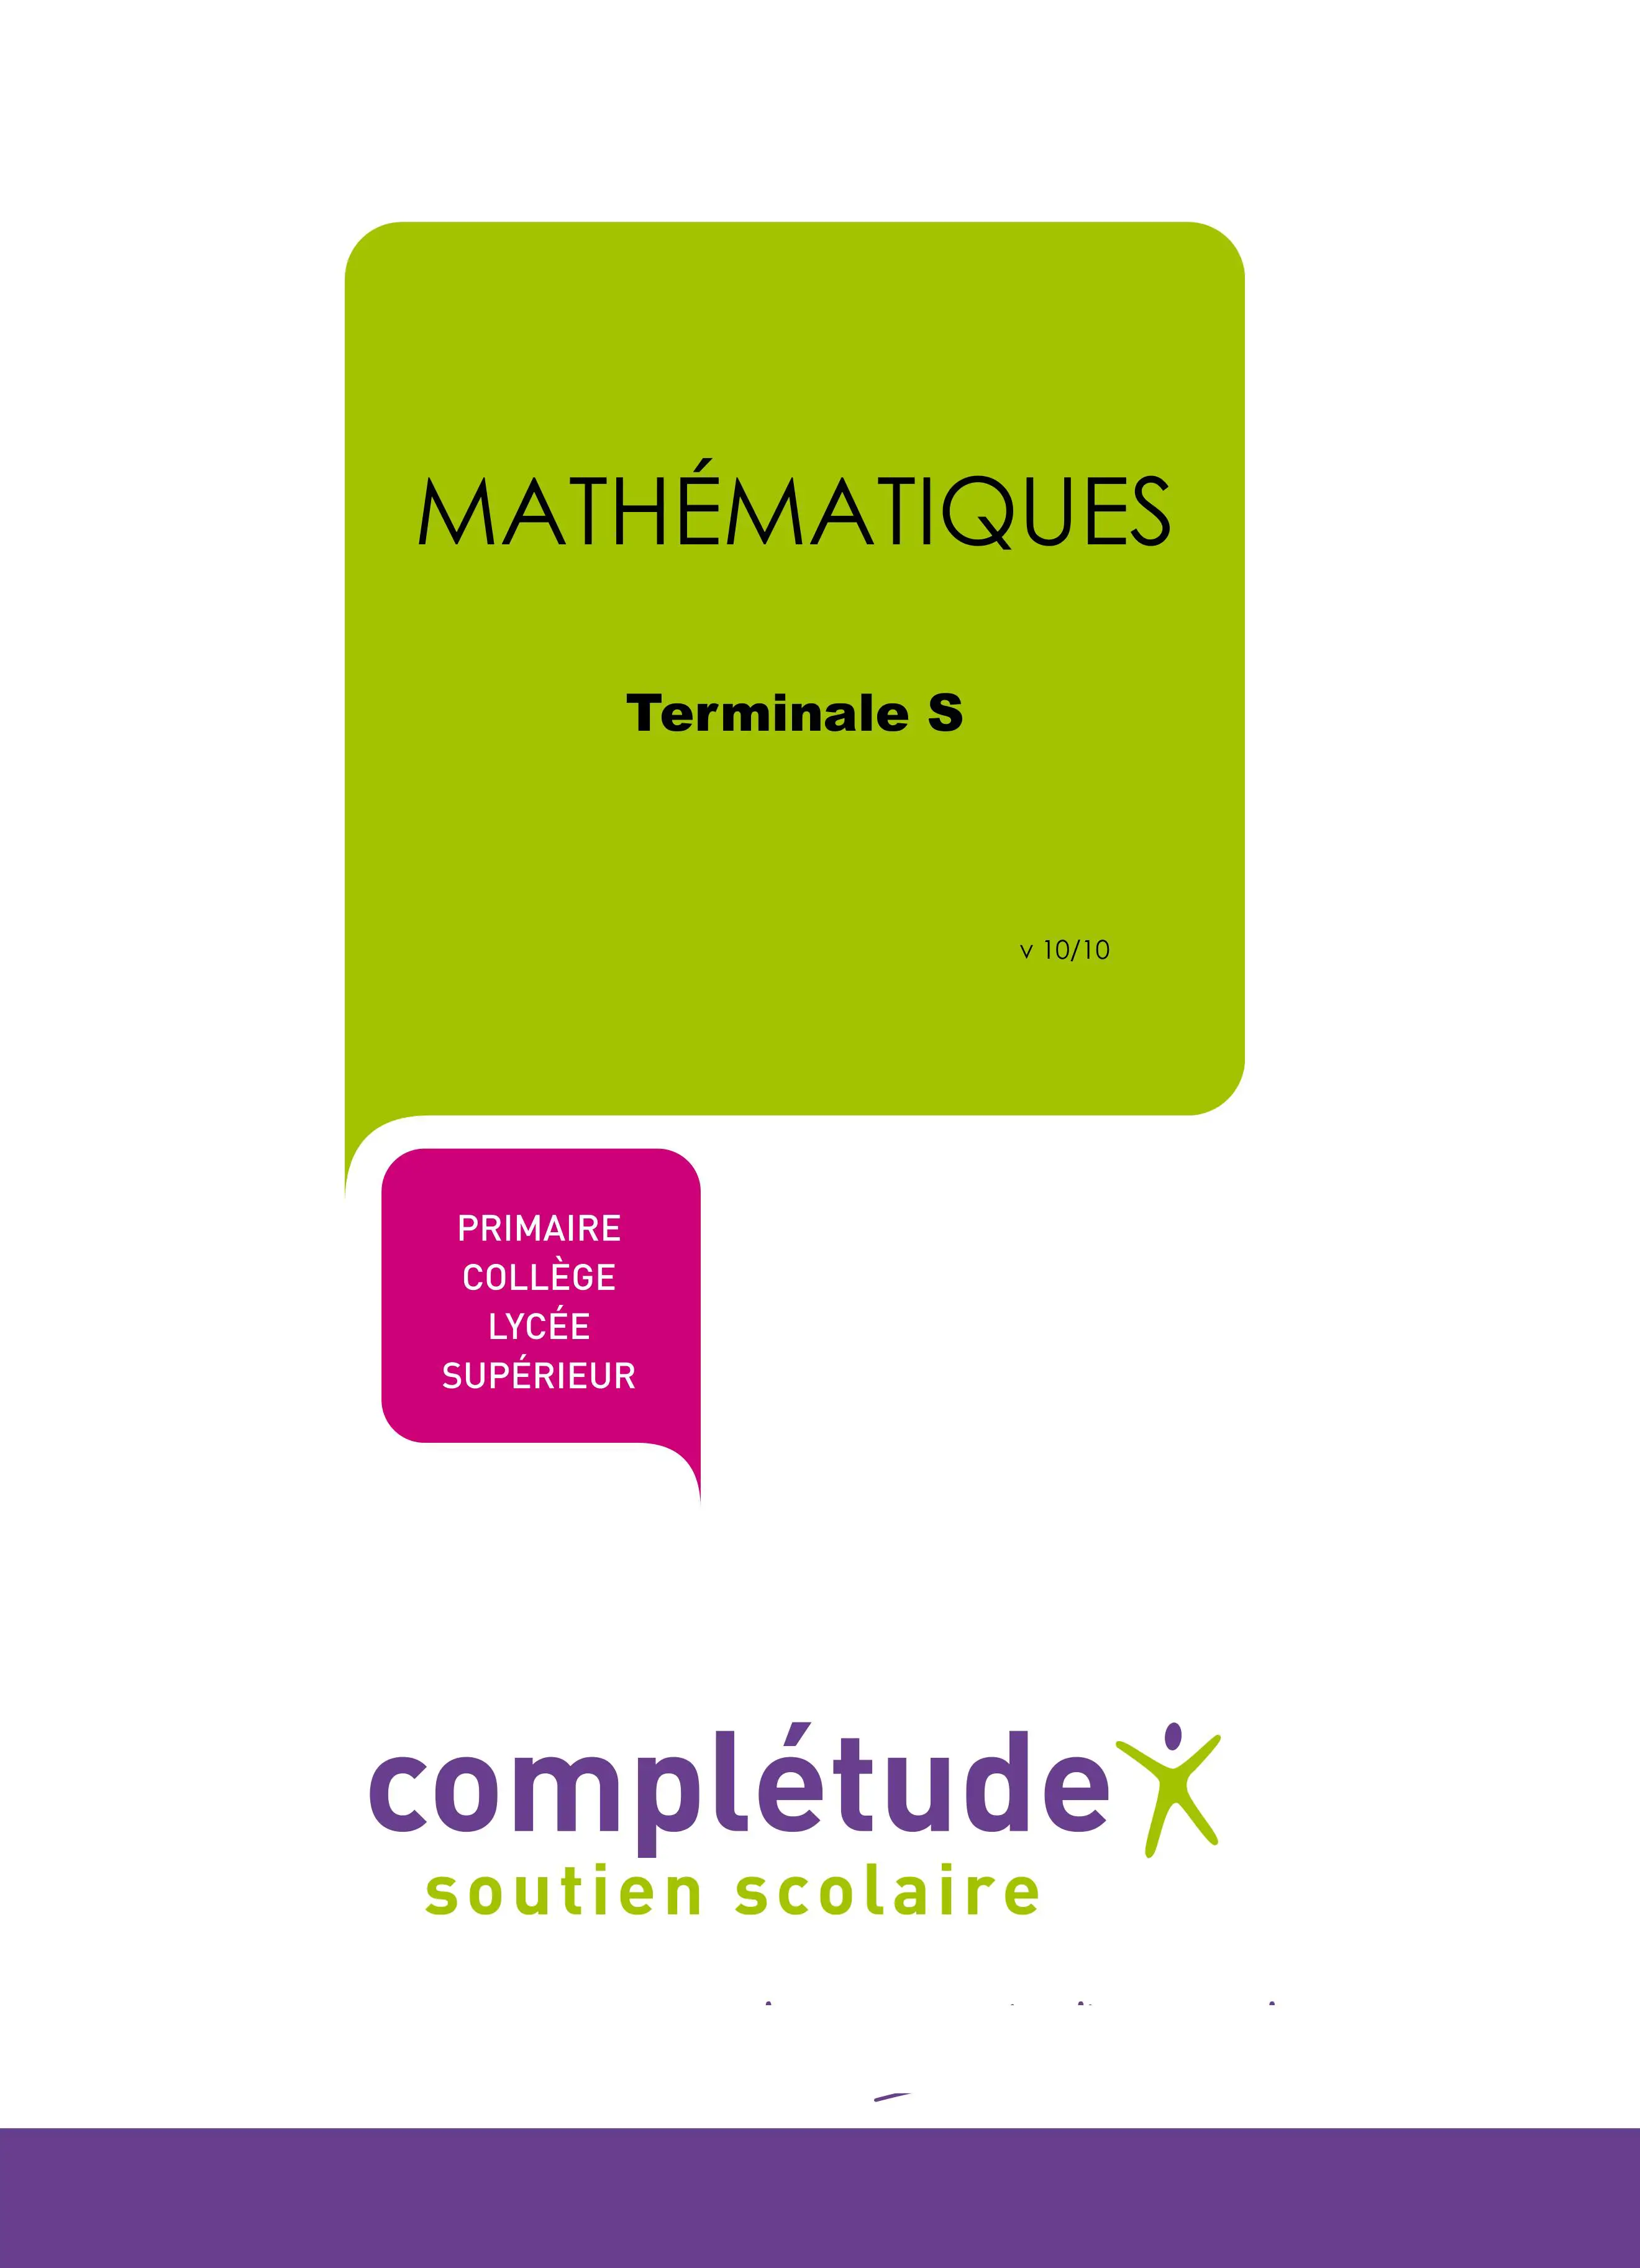 Thumbnail of book MATHÉMATIQUES Terminale S cover